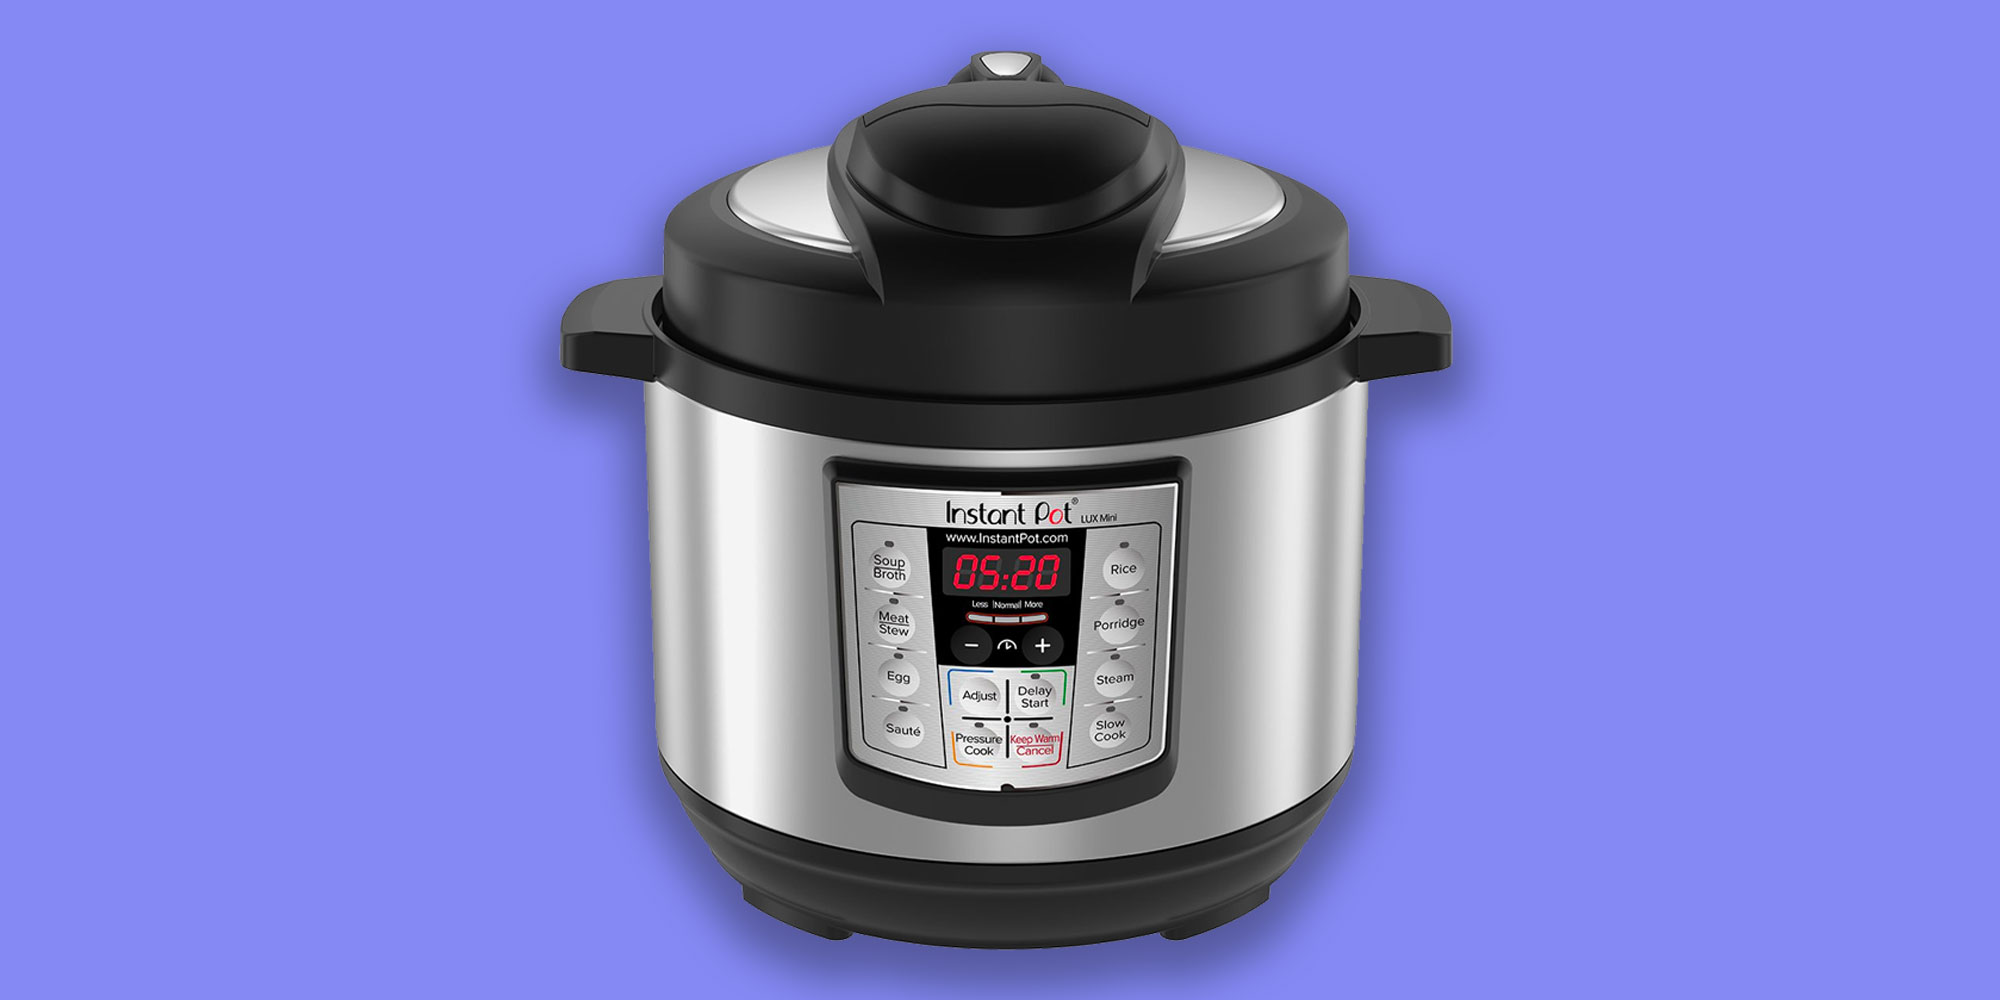  Instant  Pot s  LUX  Mini 3 Qt Pressure  Cooker  hits new 